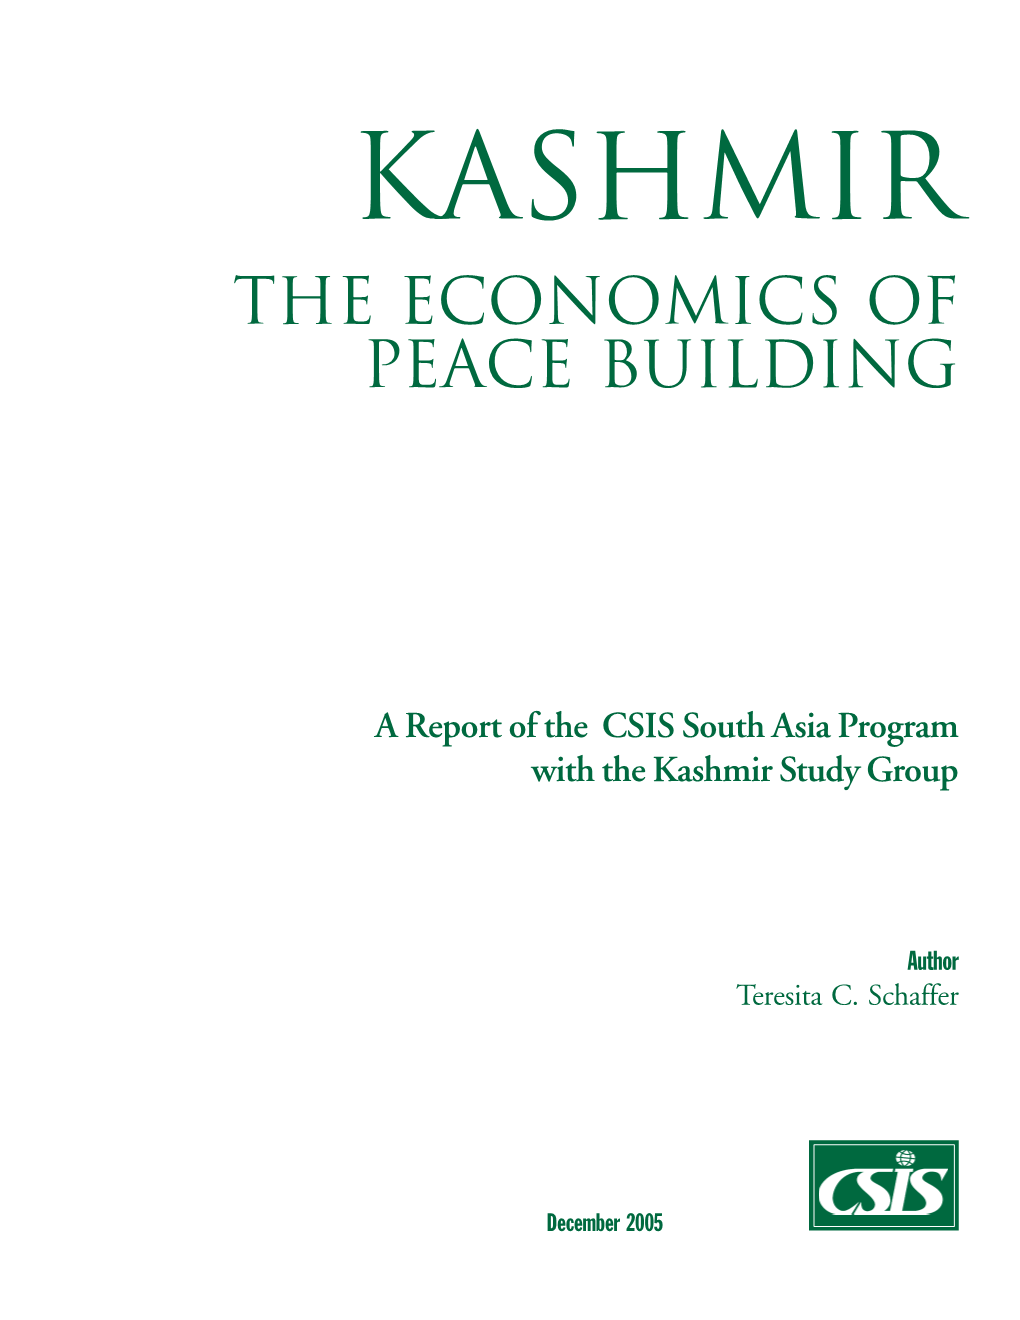 Kashmir: the Economics of Peace Building